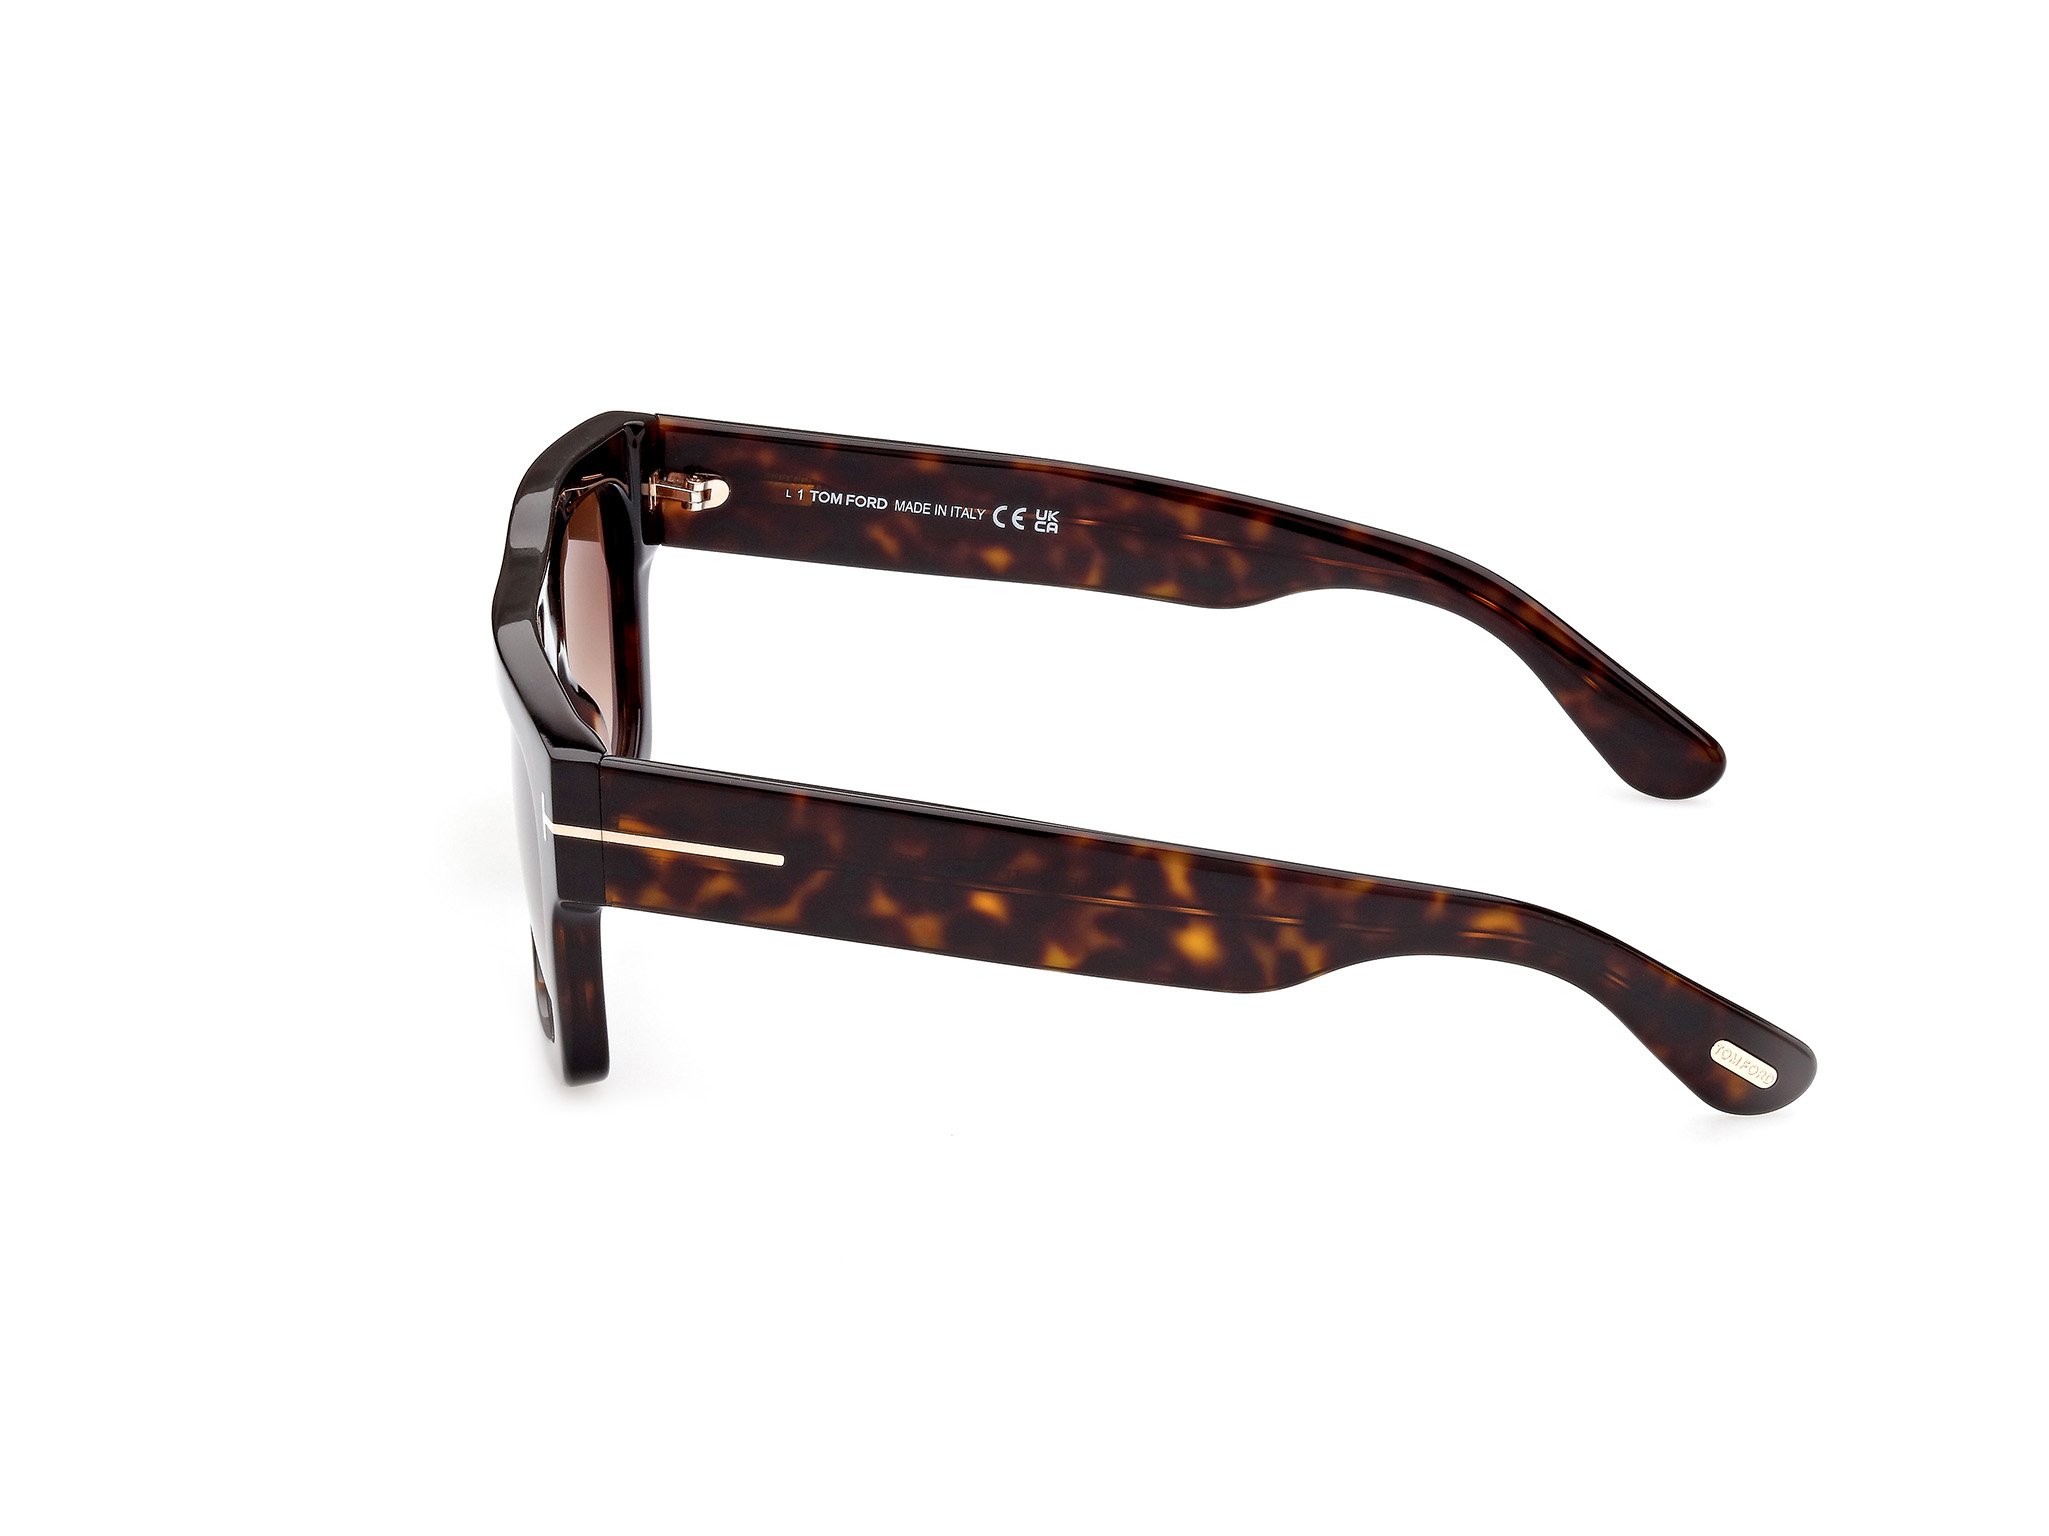 Das Bild zeigt die Sonnenbrille FT0711 52F von der Marke Tom Ford in schwarz.